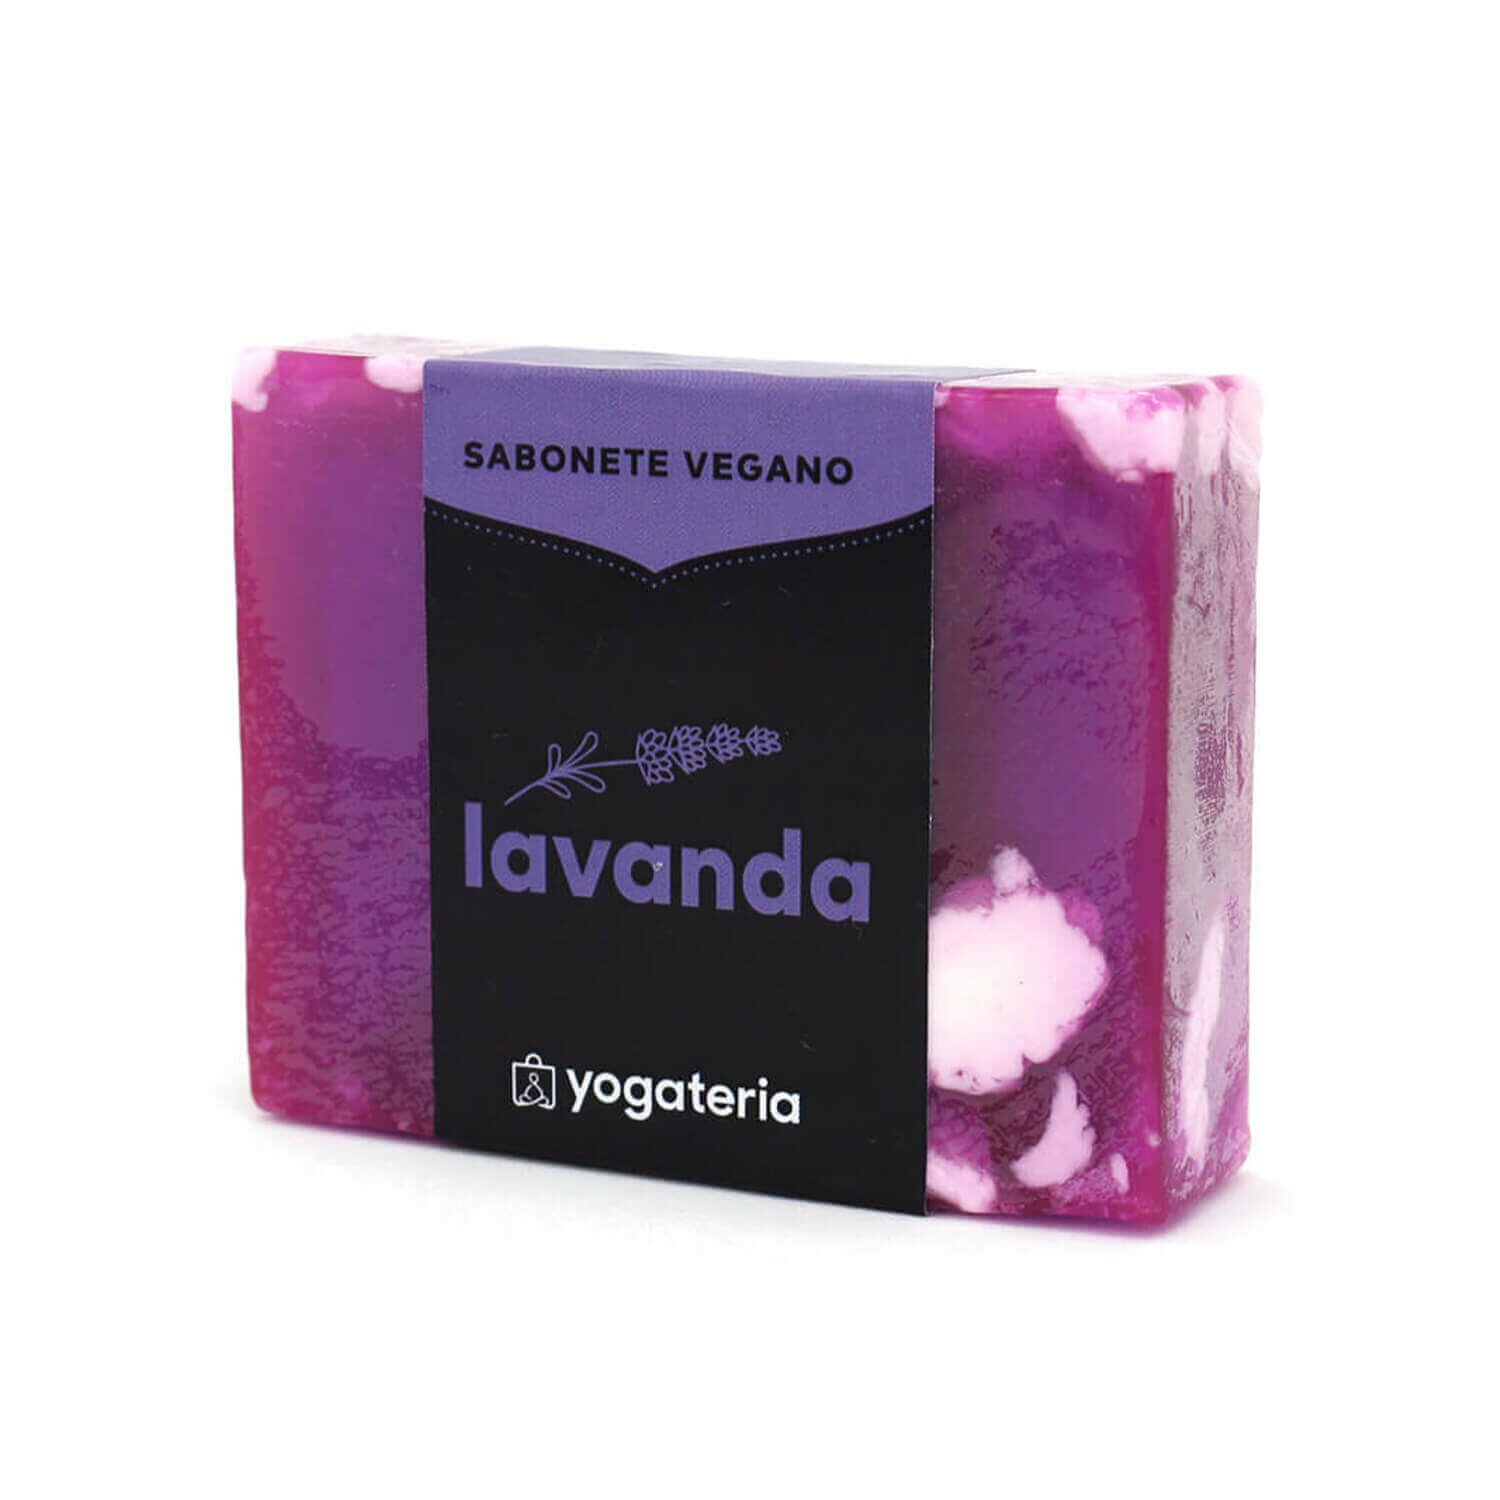 Sabonete Vegano Lavanda 6